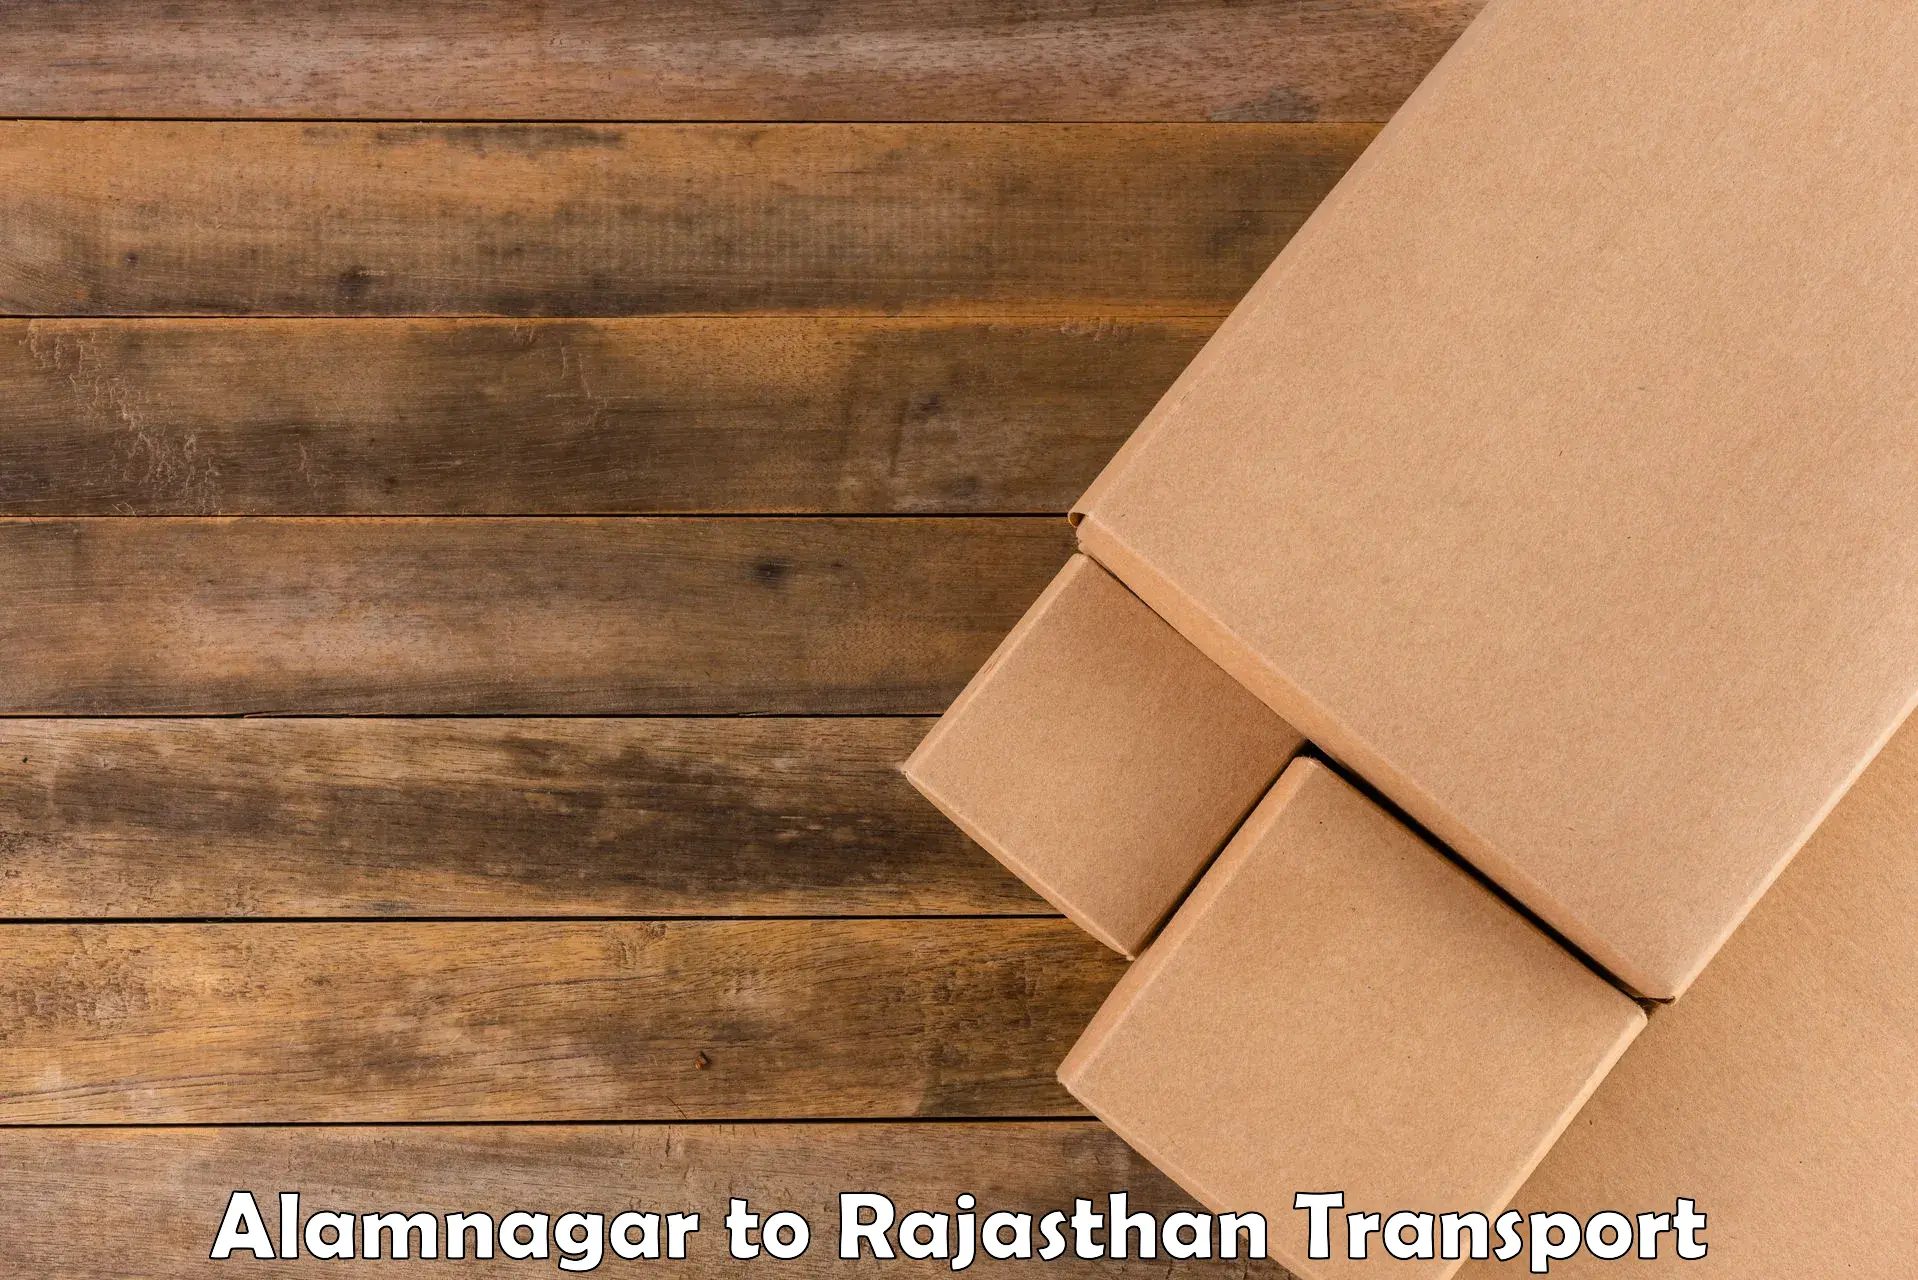 Air cargo transport services Alamnagar to Degana